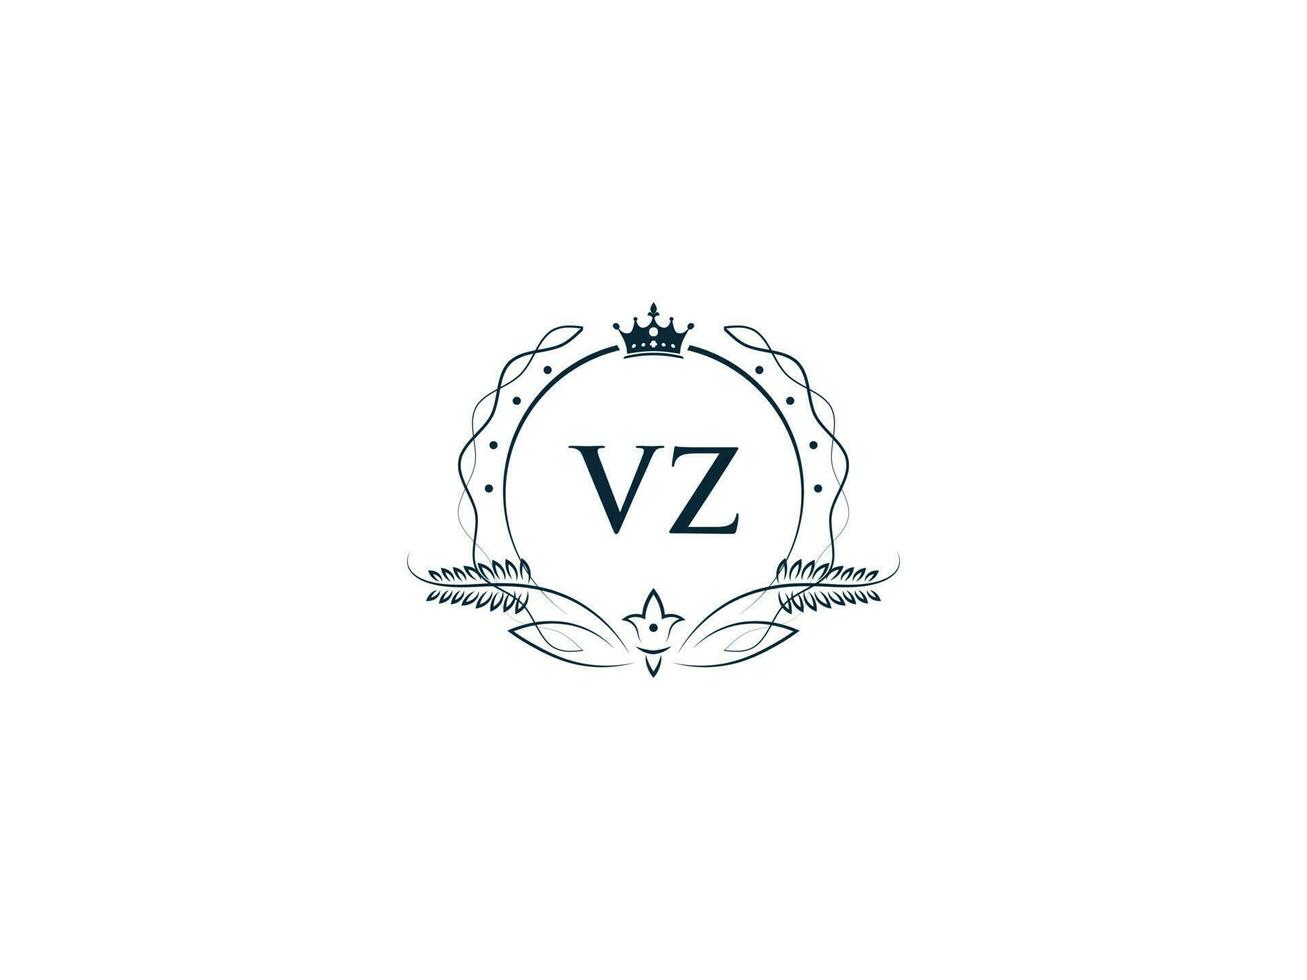 första vz logotyp brev design, minimal kunglig krona vz zv feminin logotyp symbol vektor